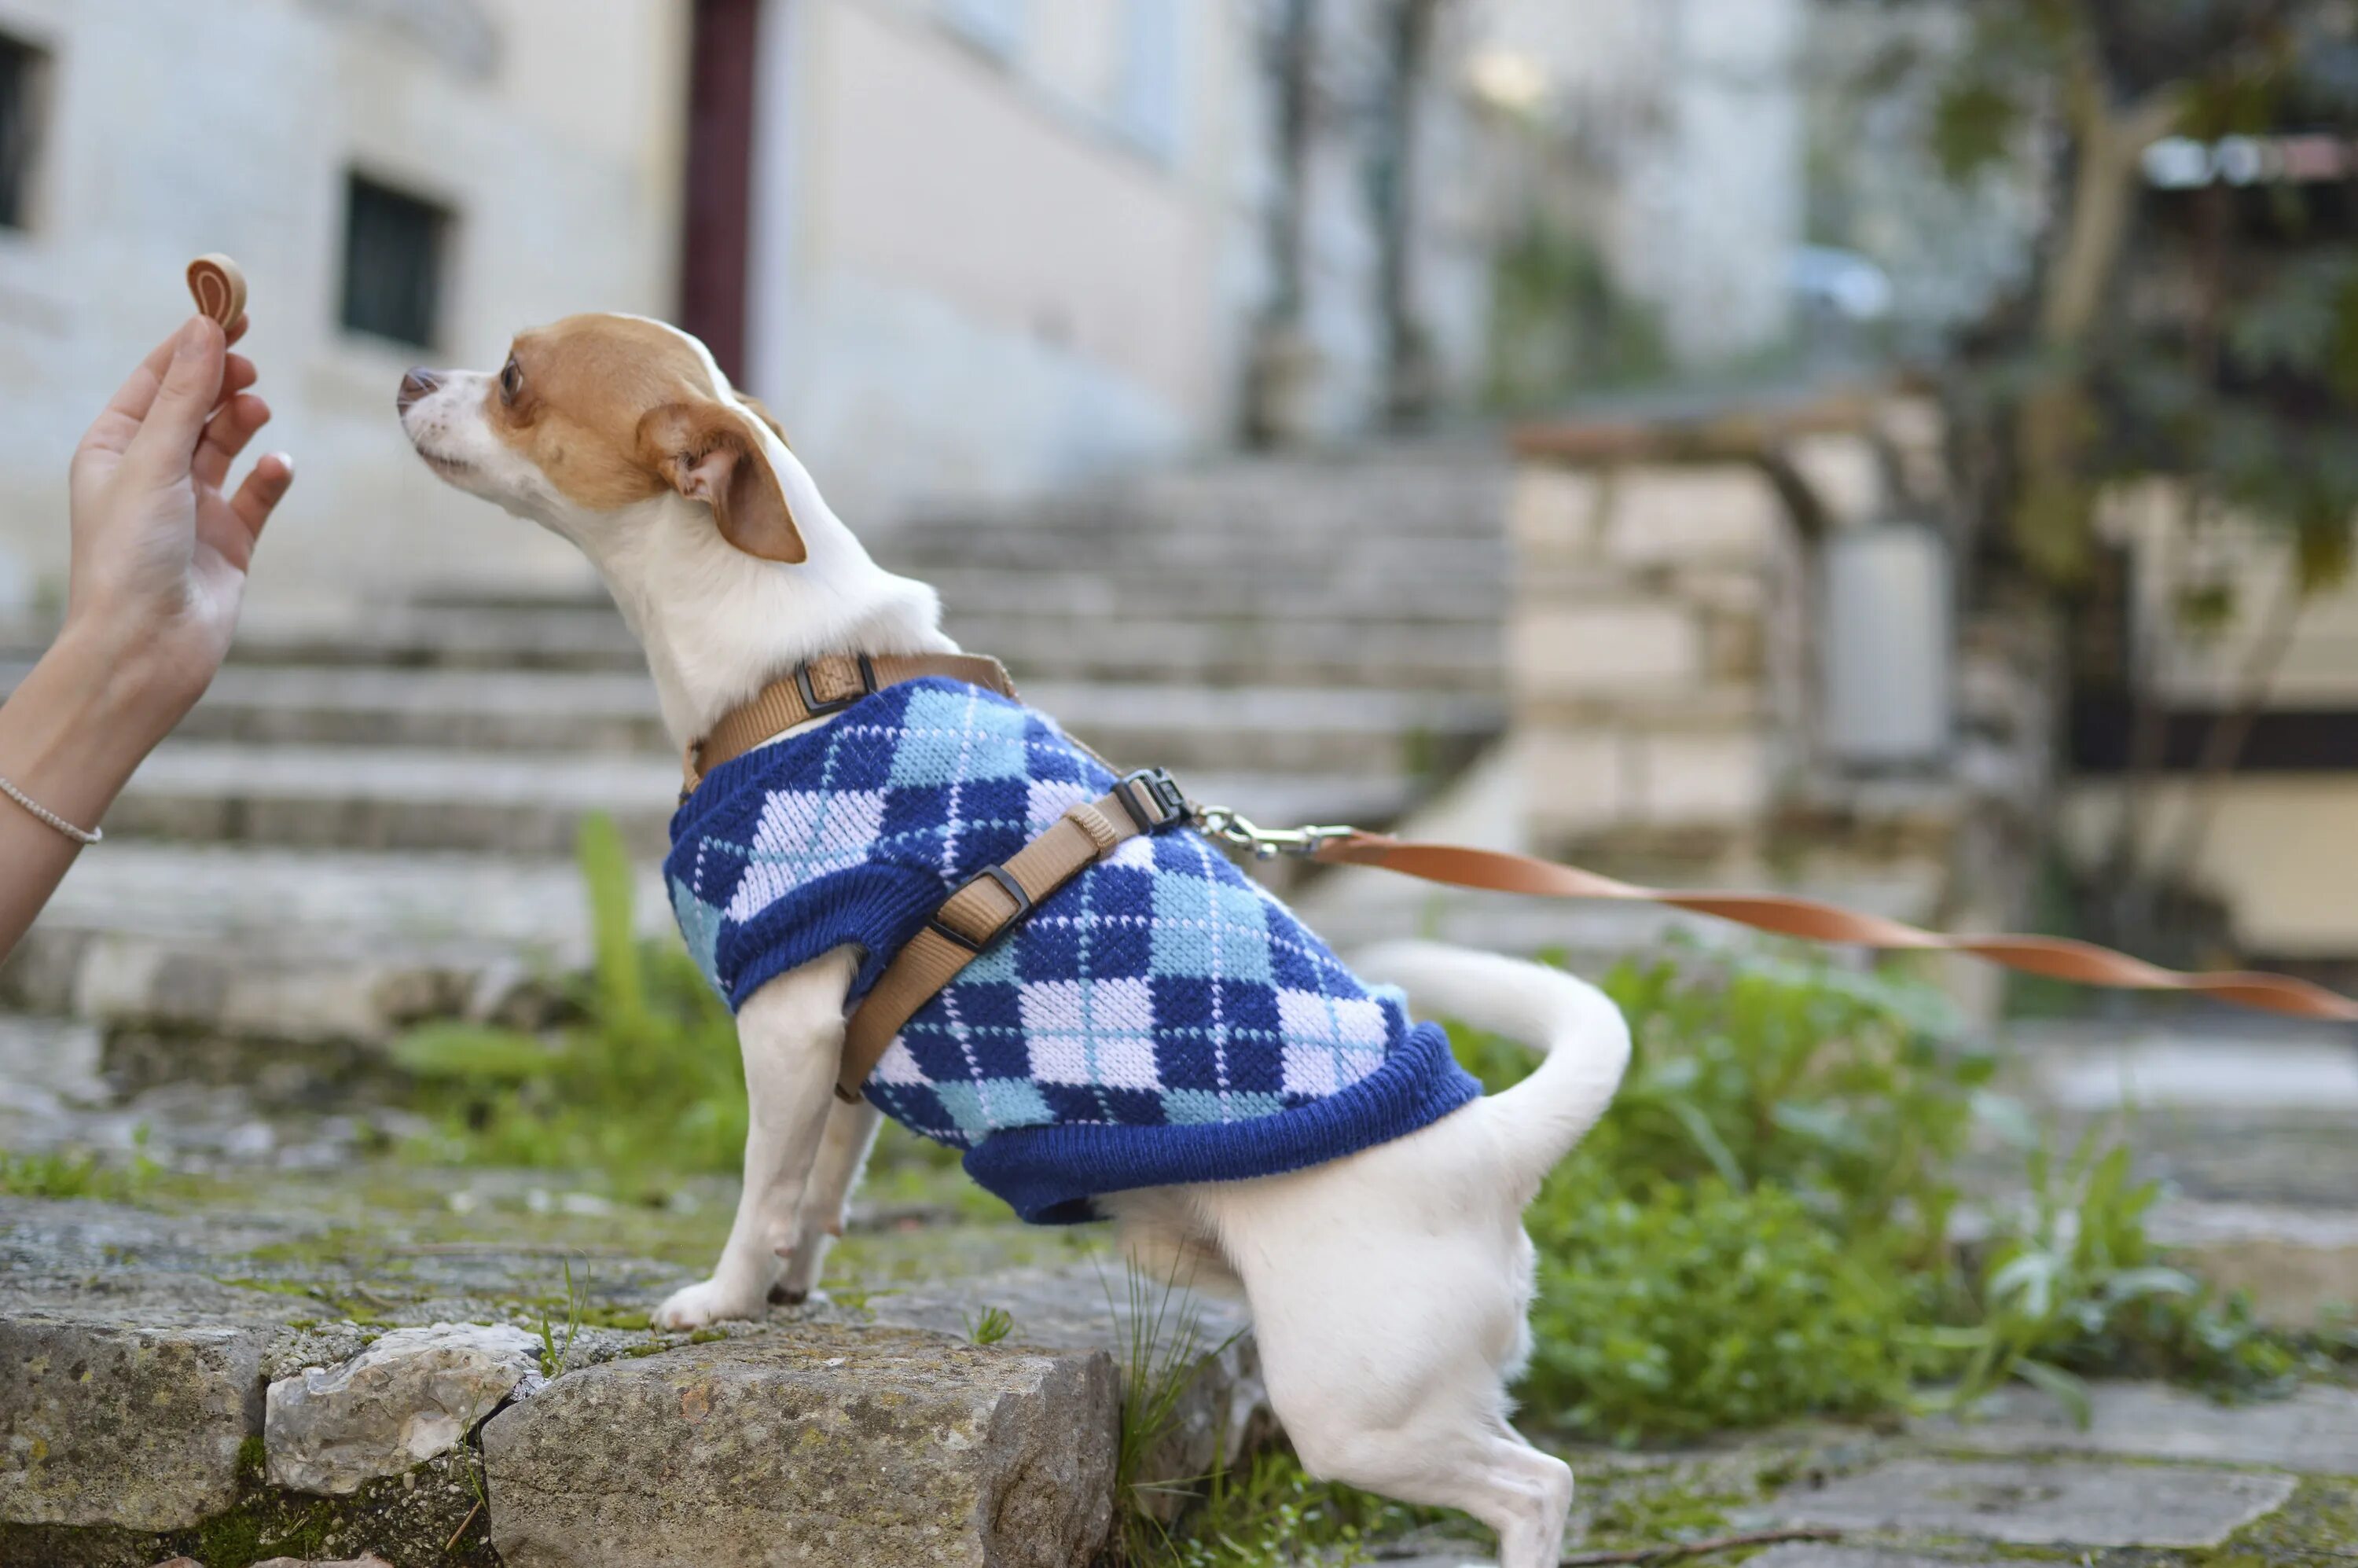 Http pets. Одежда для собак. Чихуахуа на прогулке. Маленькая собачка на прогулке. Чихуахуа в одежде на улице.